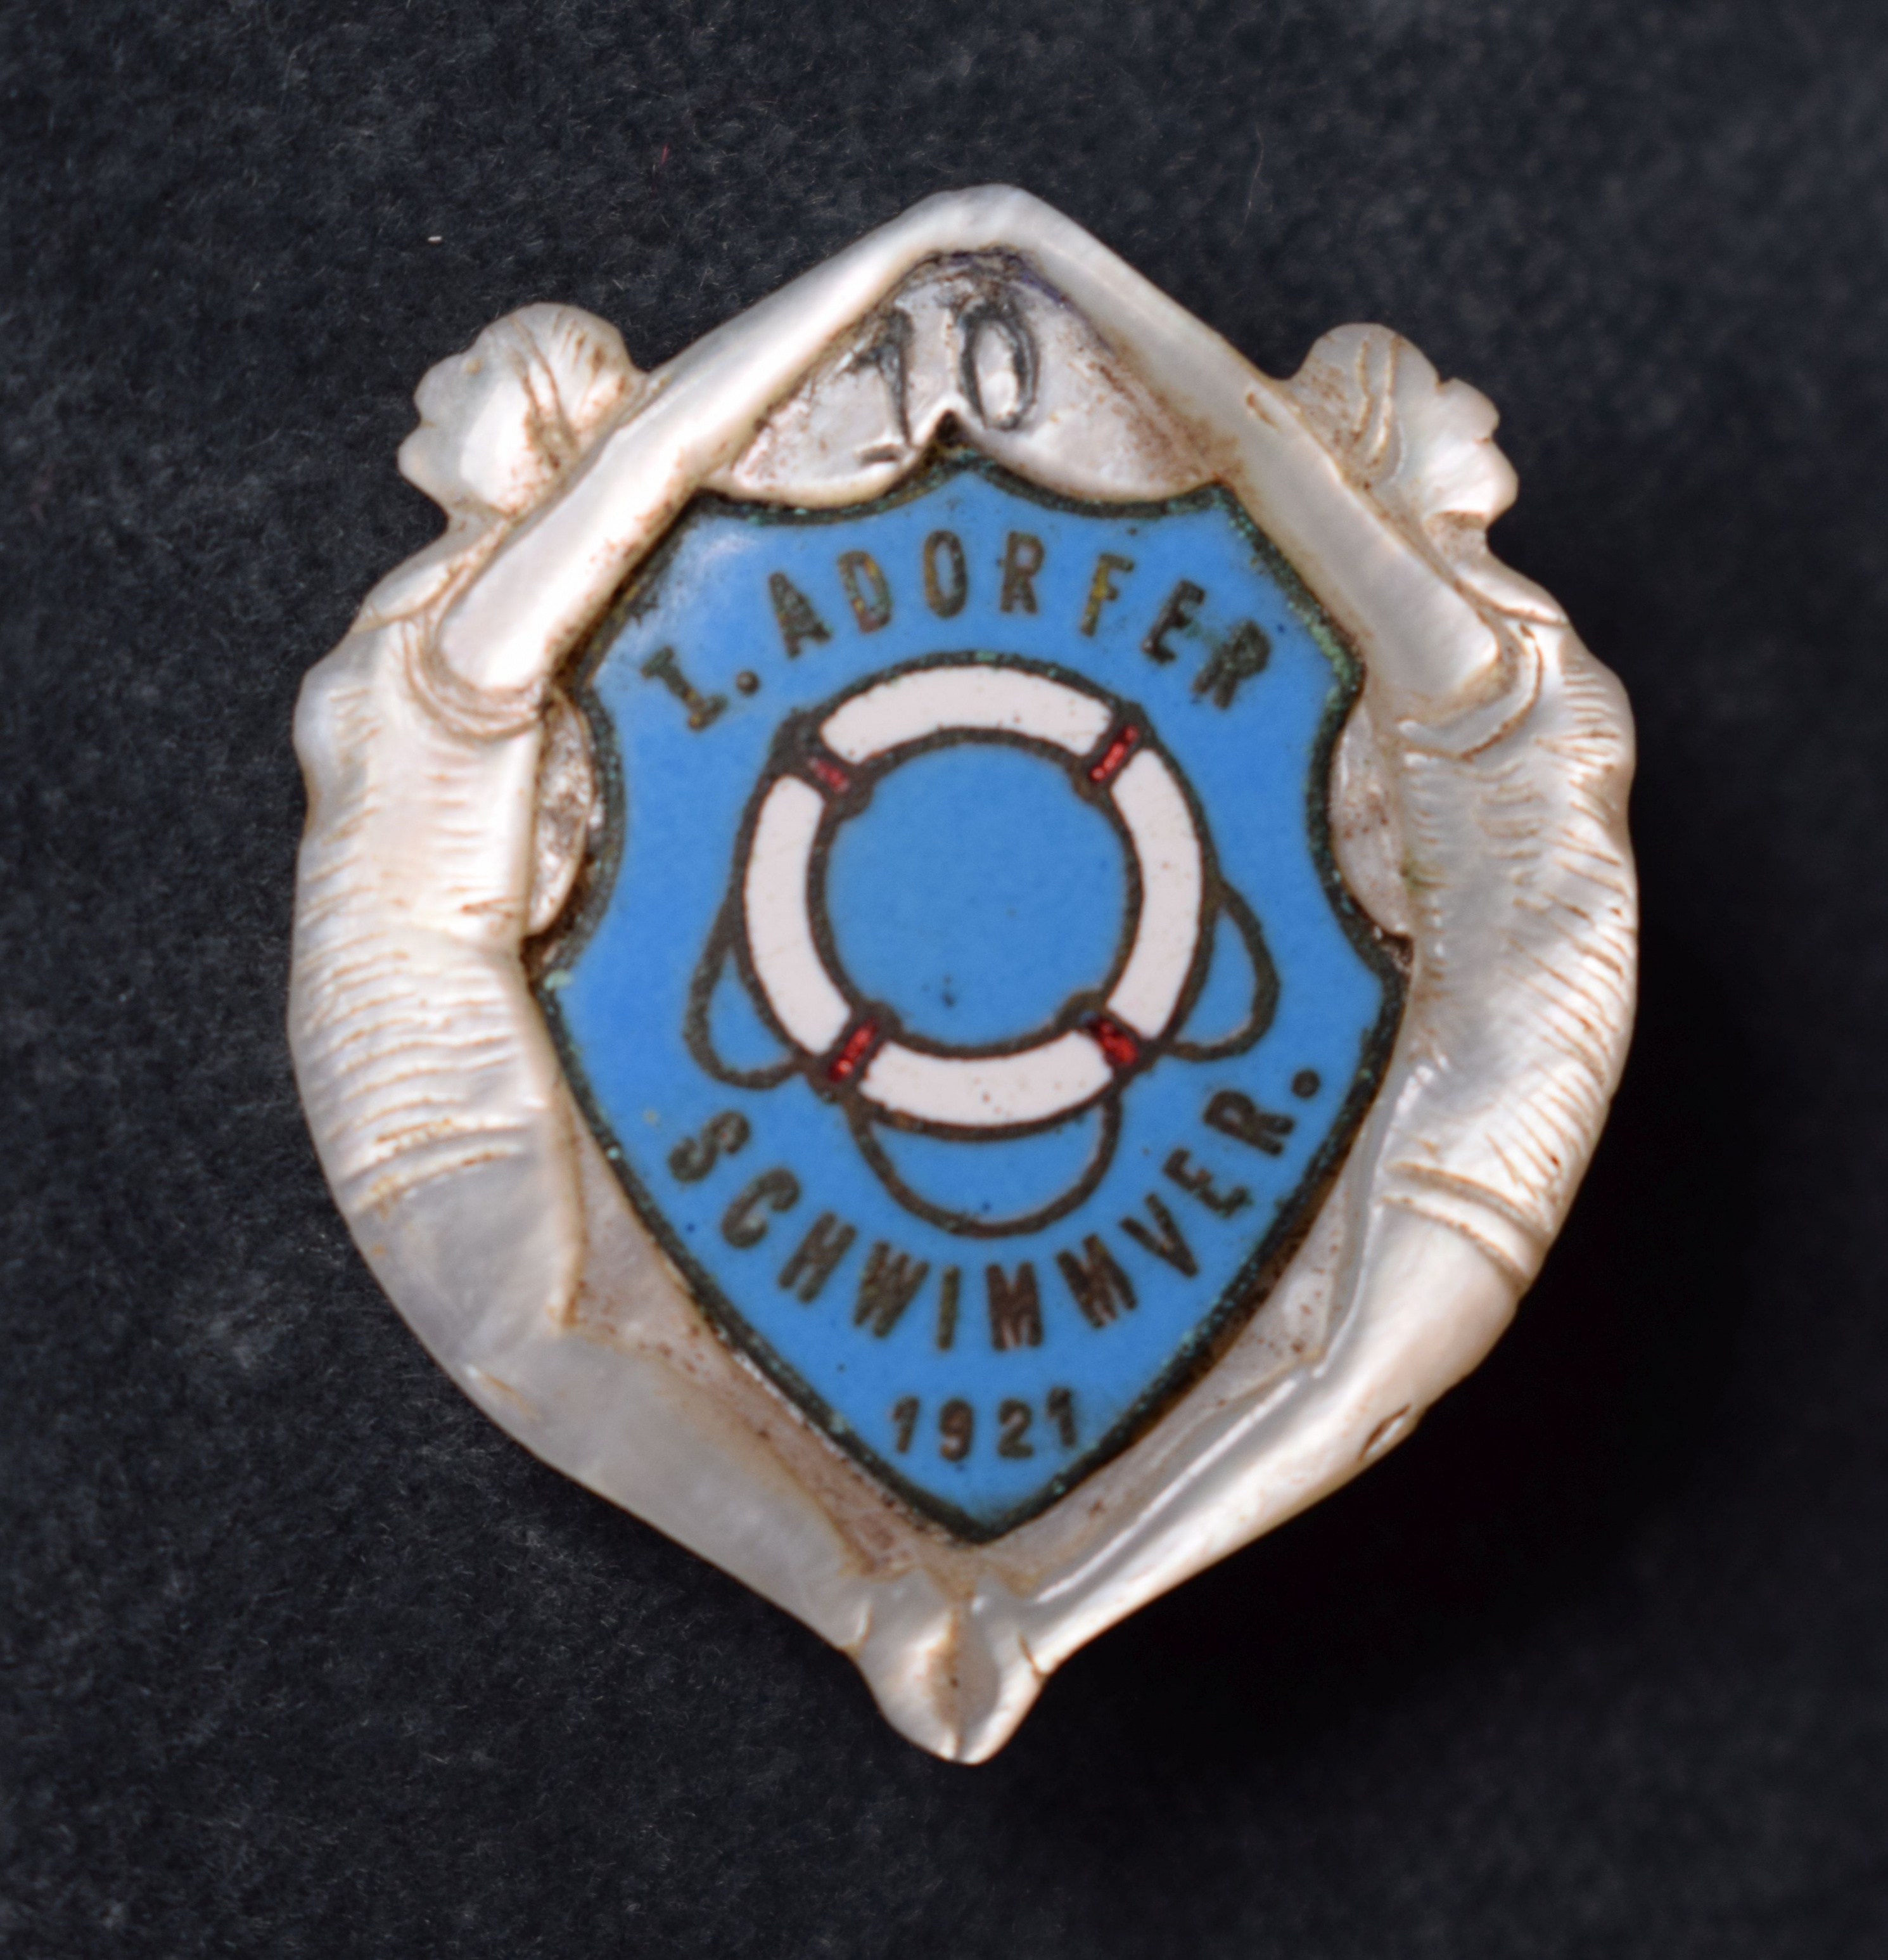 Perlmutterabzeichen des Adorfer Schwimmvereins (Perlmutter- und Heimatmuseum Adorf CC BY-NC-SA)